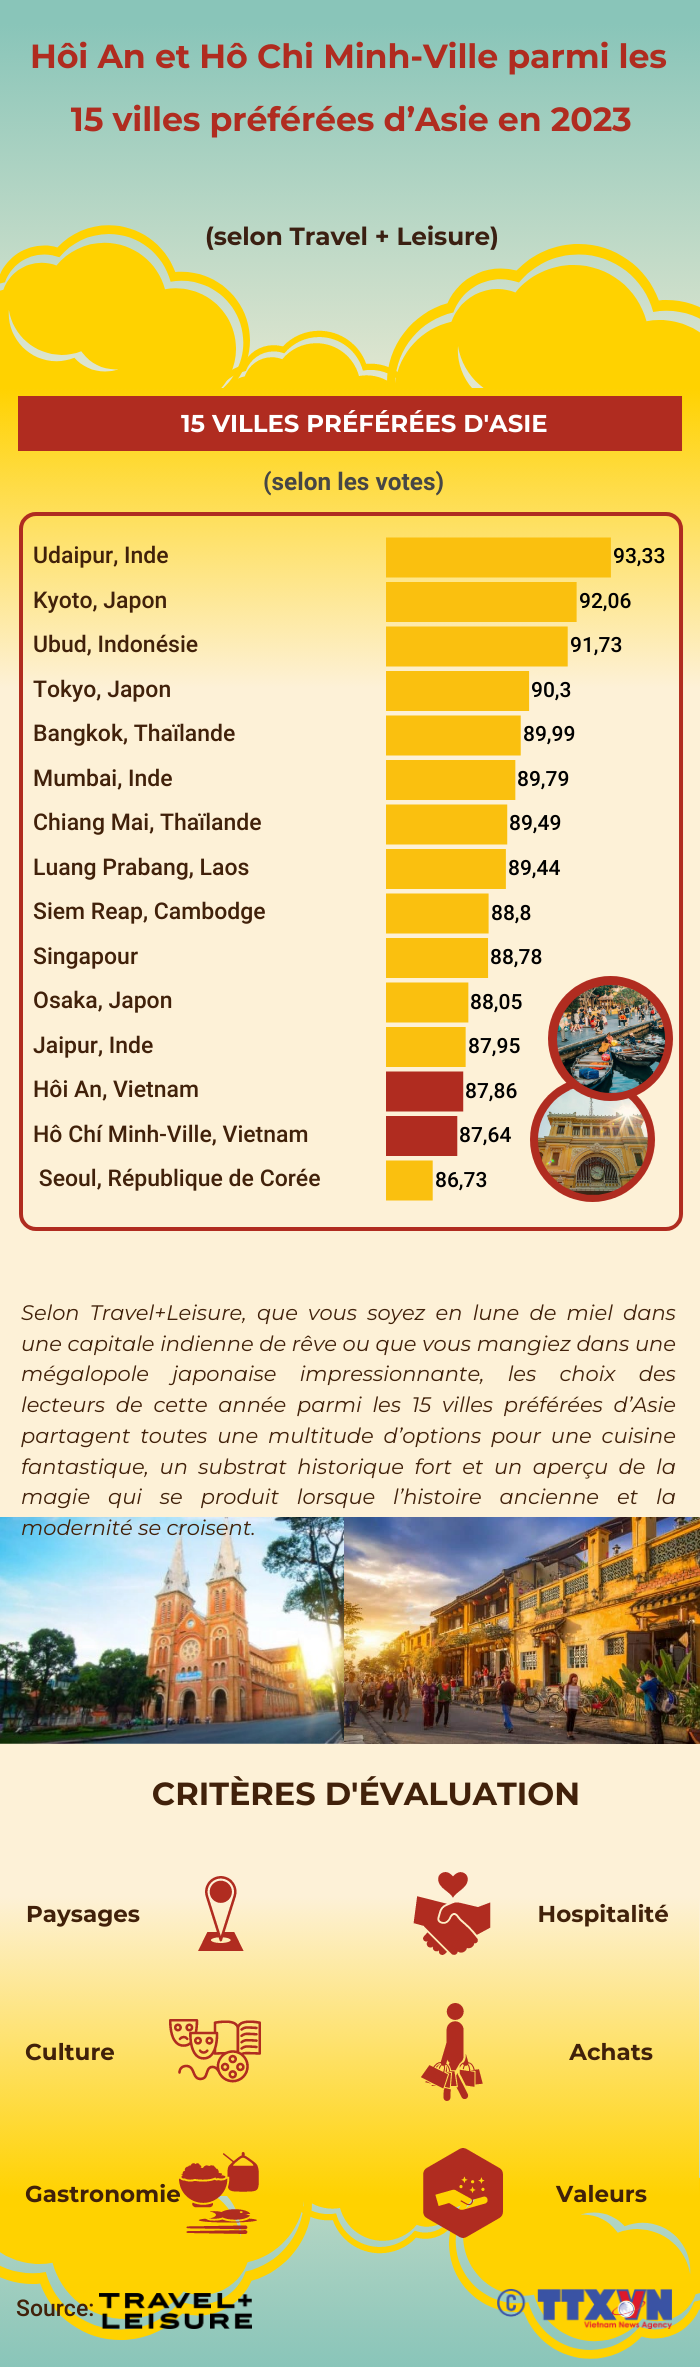 Hoi An et Ho Chi Minh-Ville parmi les 15 villes preferees d’Asie en 2023 hinh anh 1